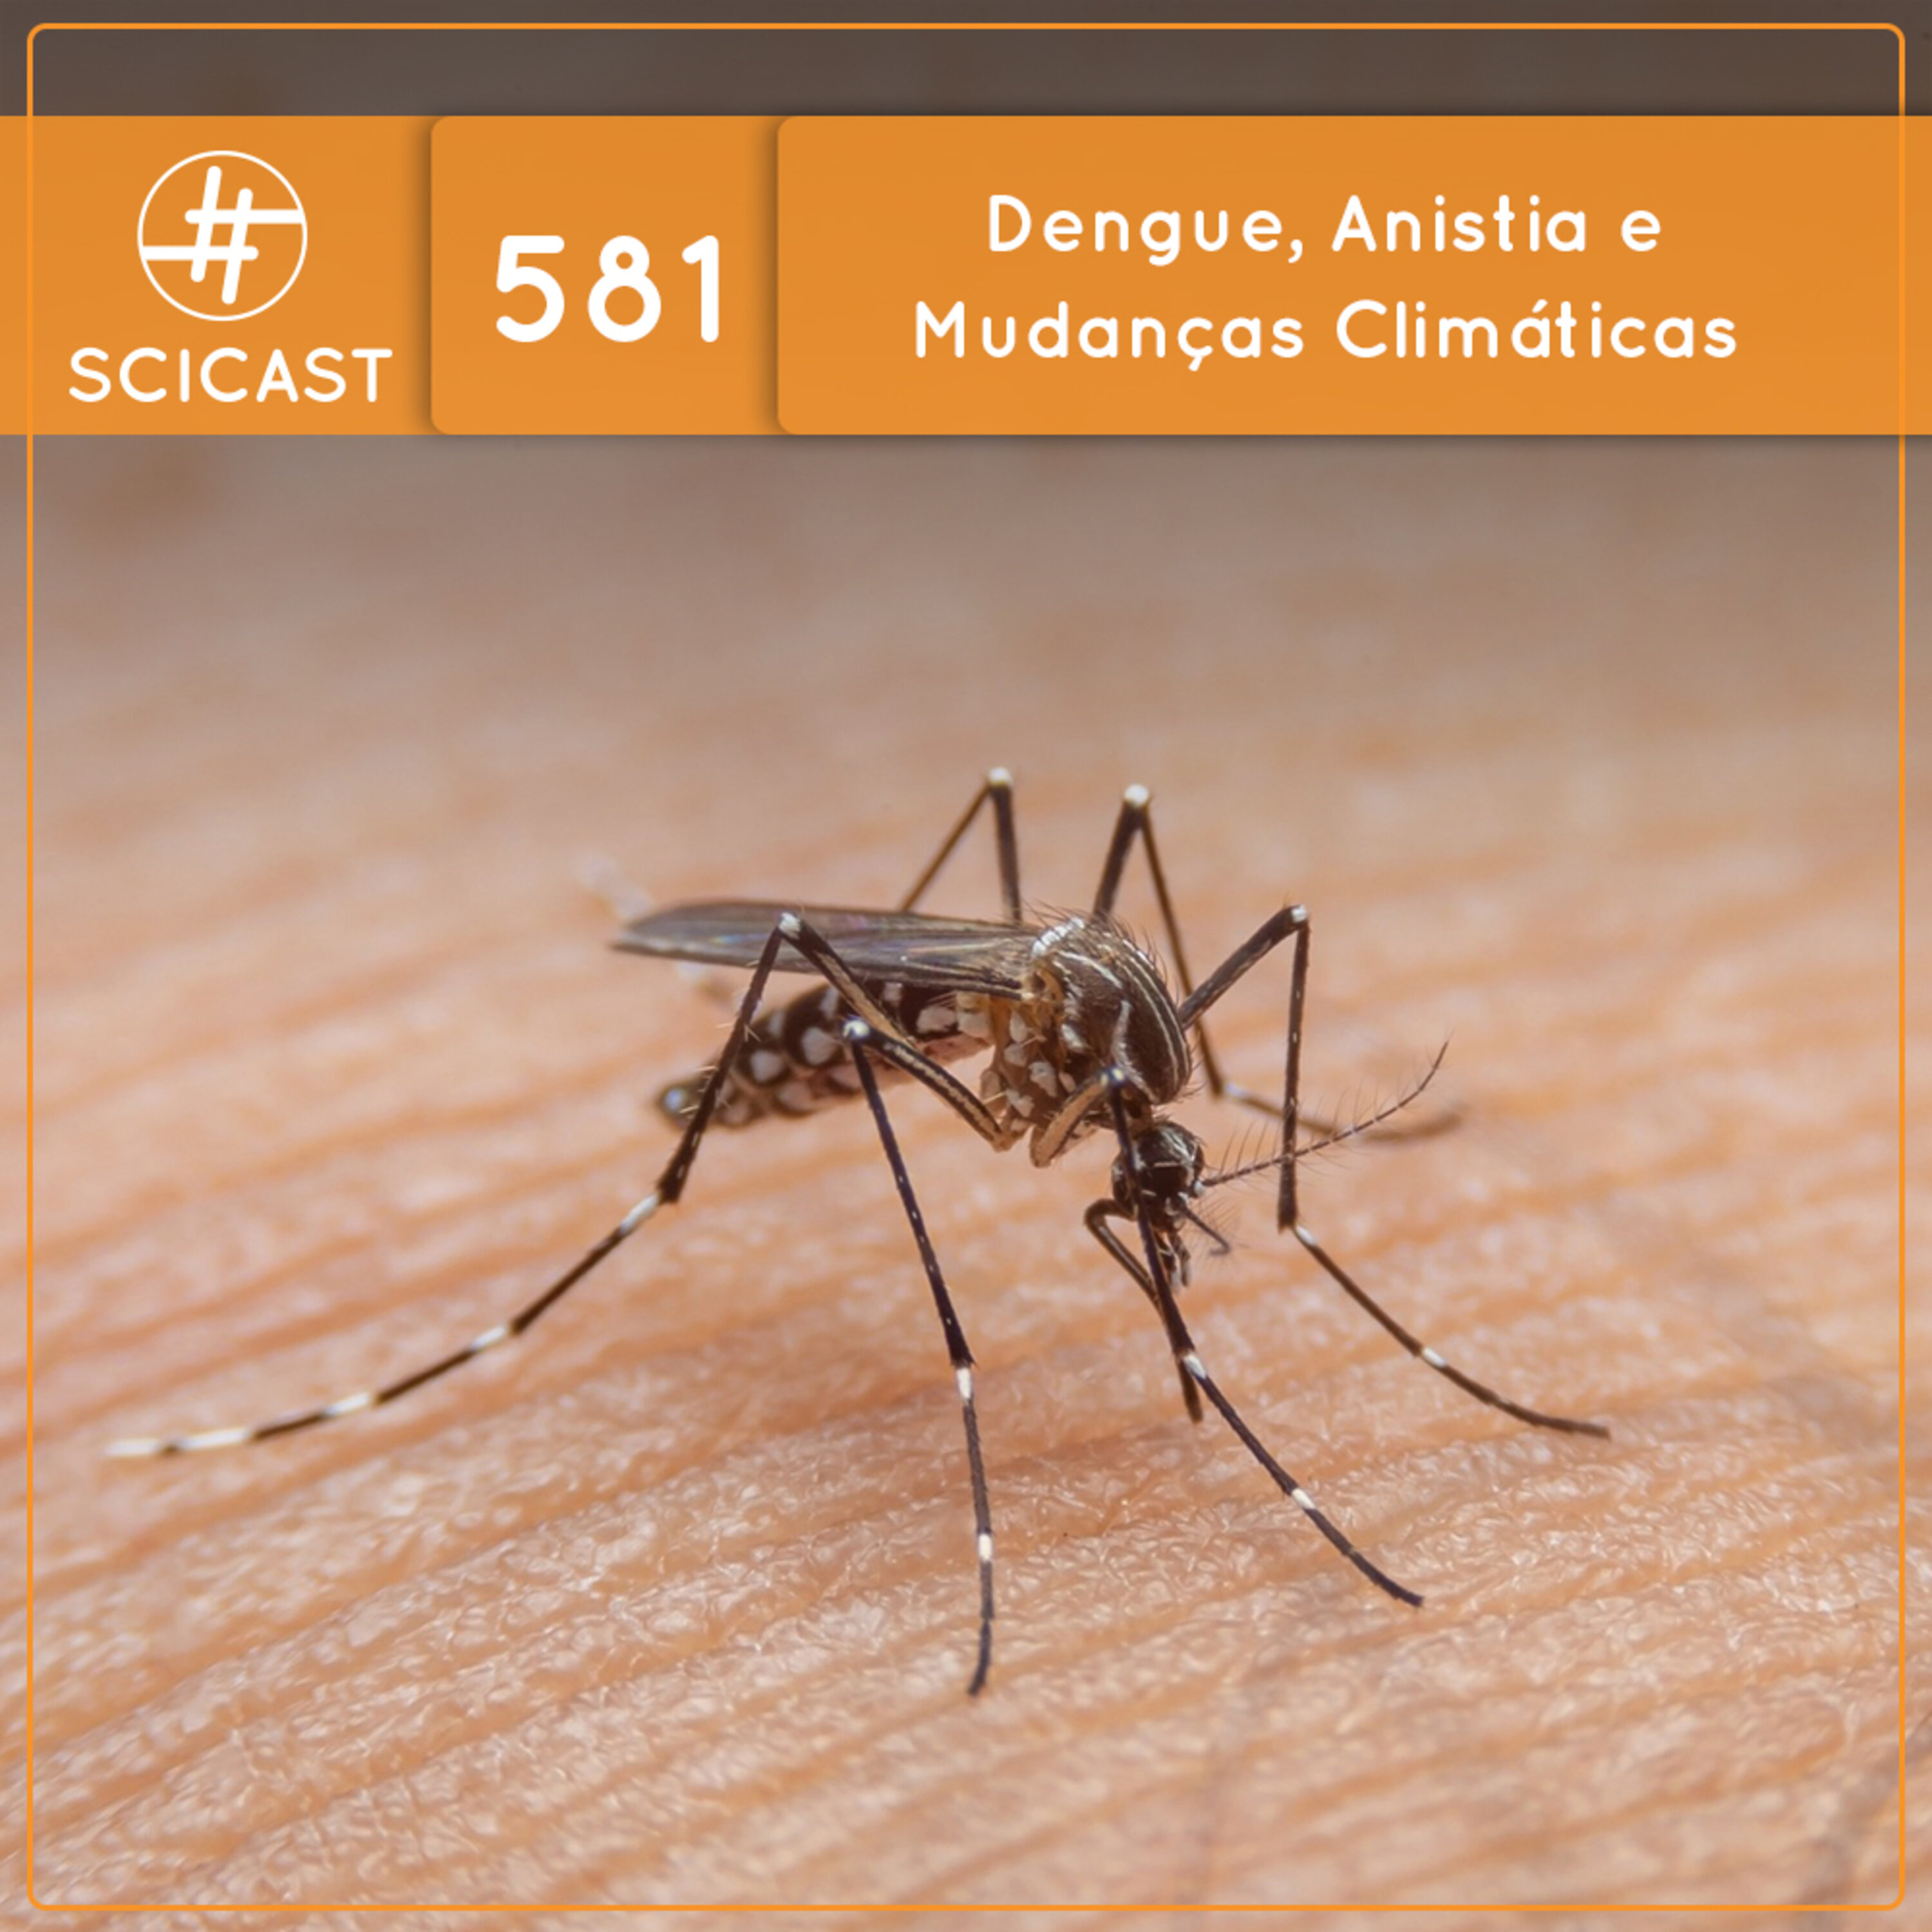 Dengue, Anistia e Mudanças Climáticas (SciCast #581)